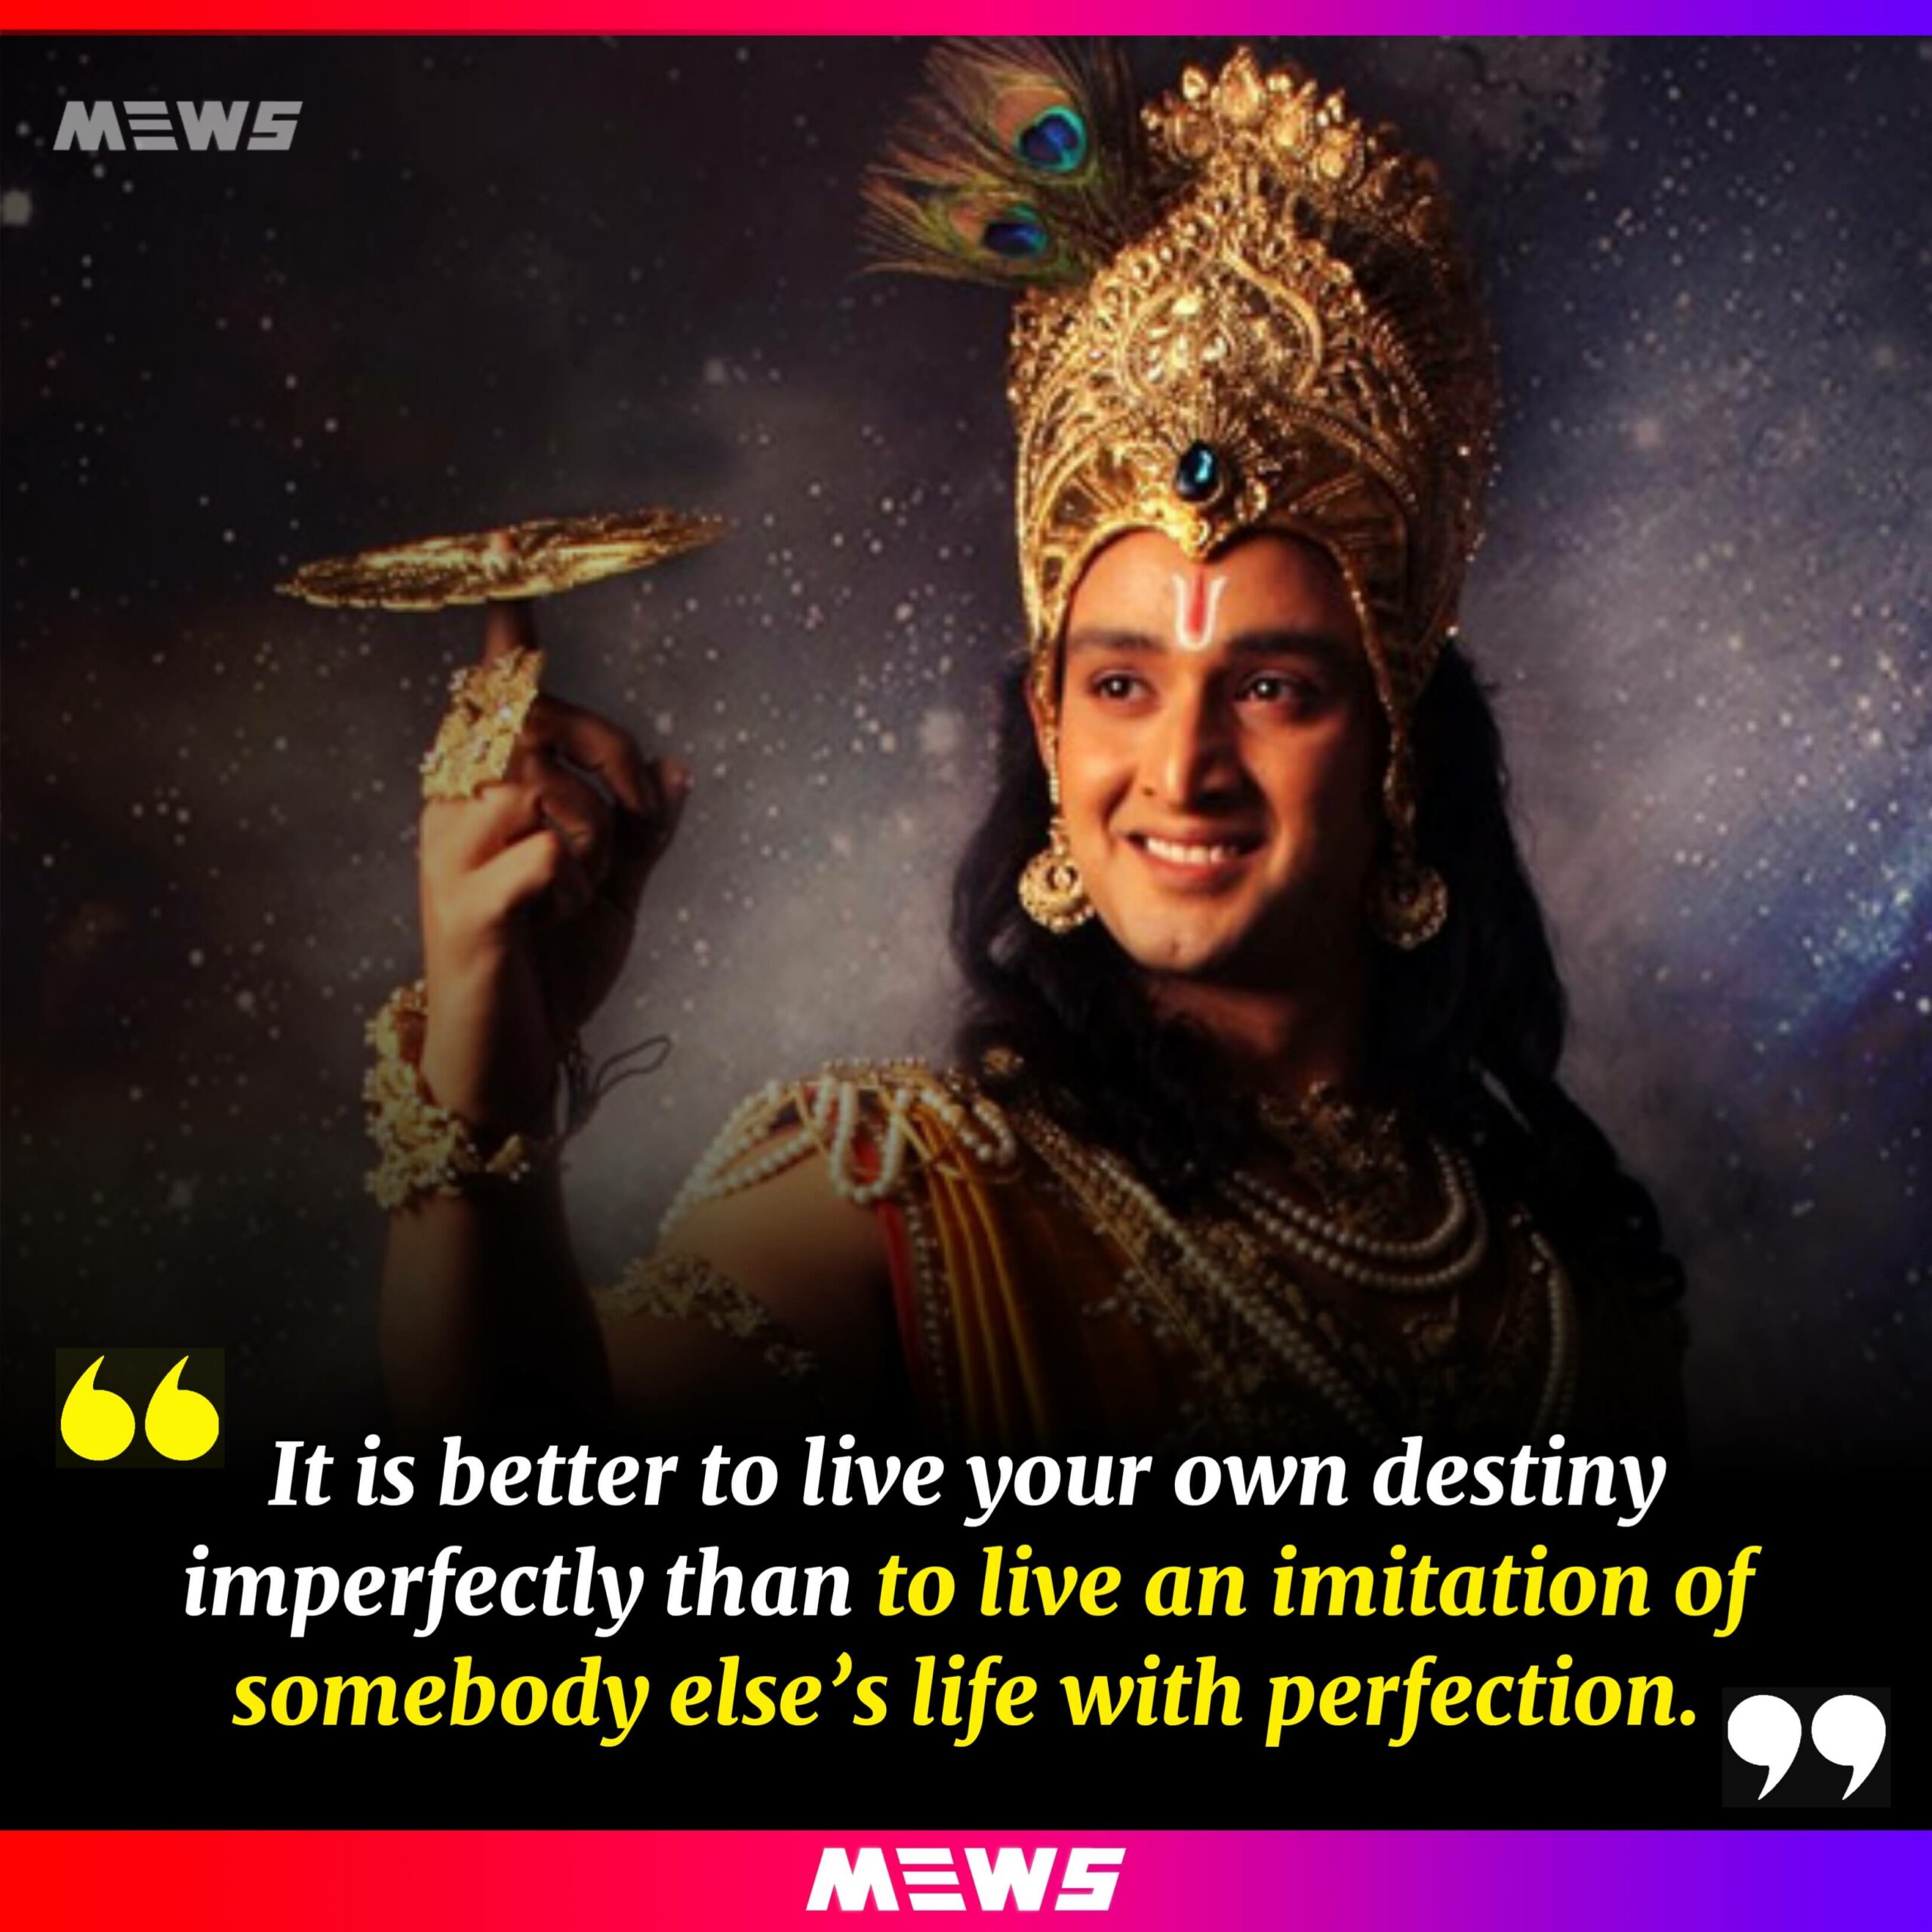 Quote of Sri Krishna